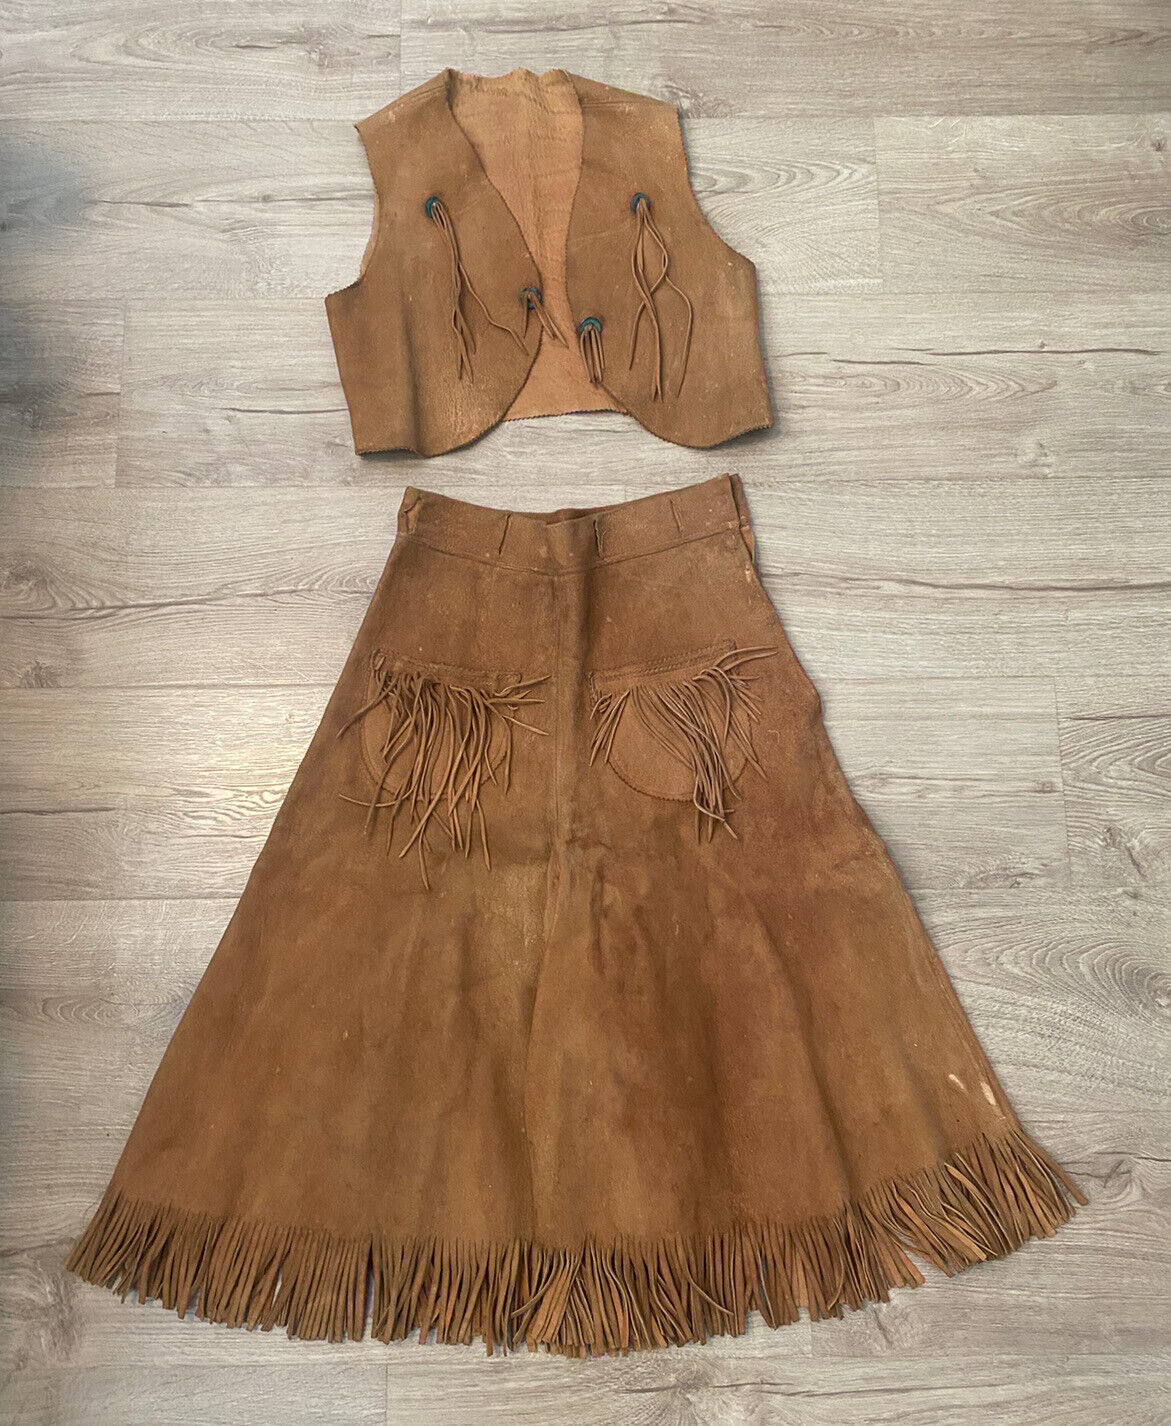 Vintage Antique Native American? Leather Fringe Shorts Skirt & Vest Outfit